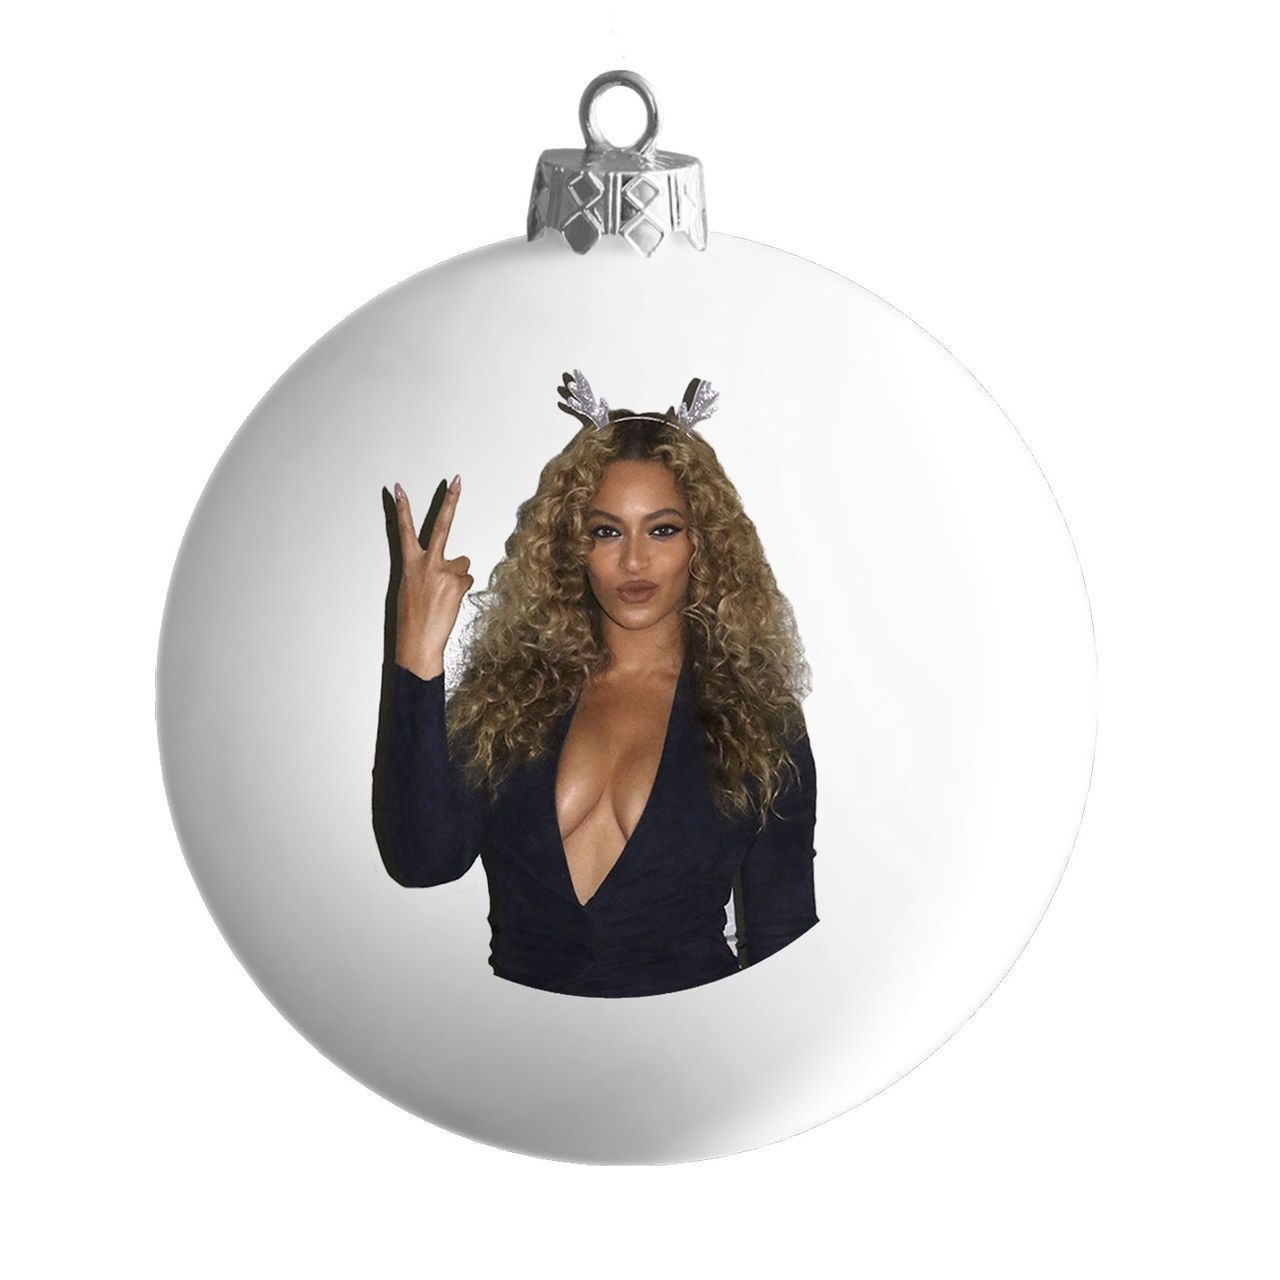 Ferienoncé White Satin Ball Ornament, $12, [Beyonce.com](https://shop.beyonce.com/products/62214-holidayonce-white-satin-ball-ornament)